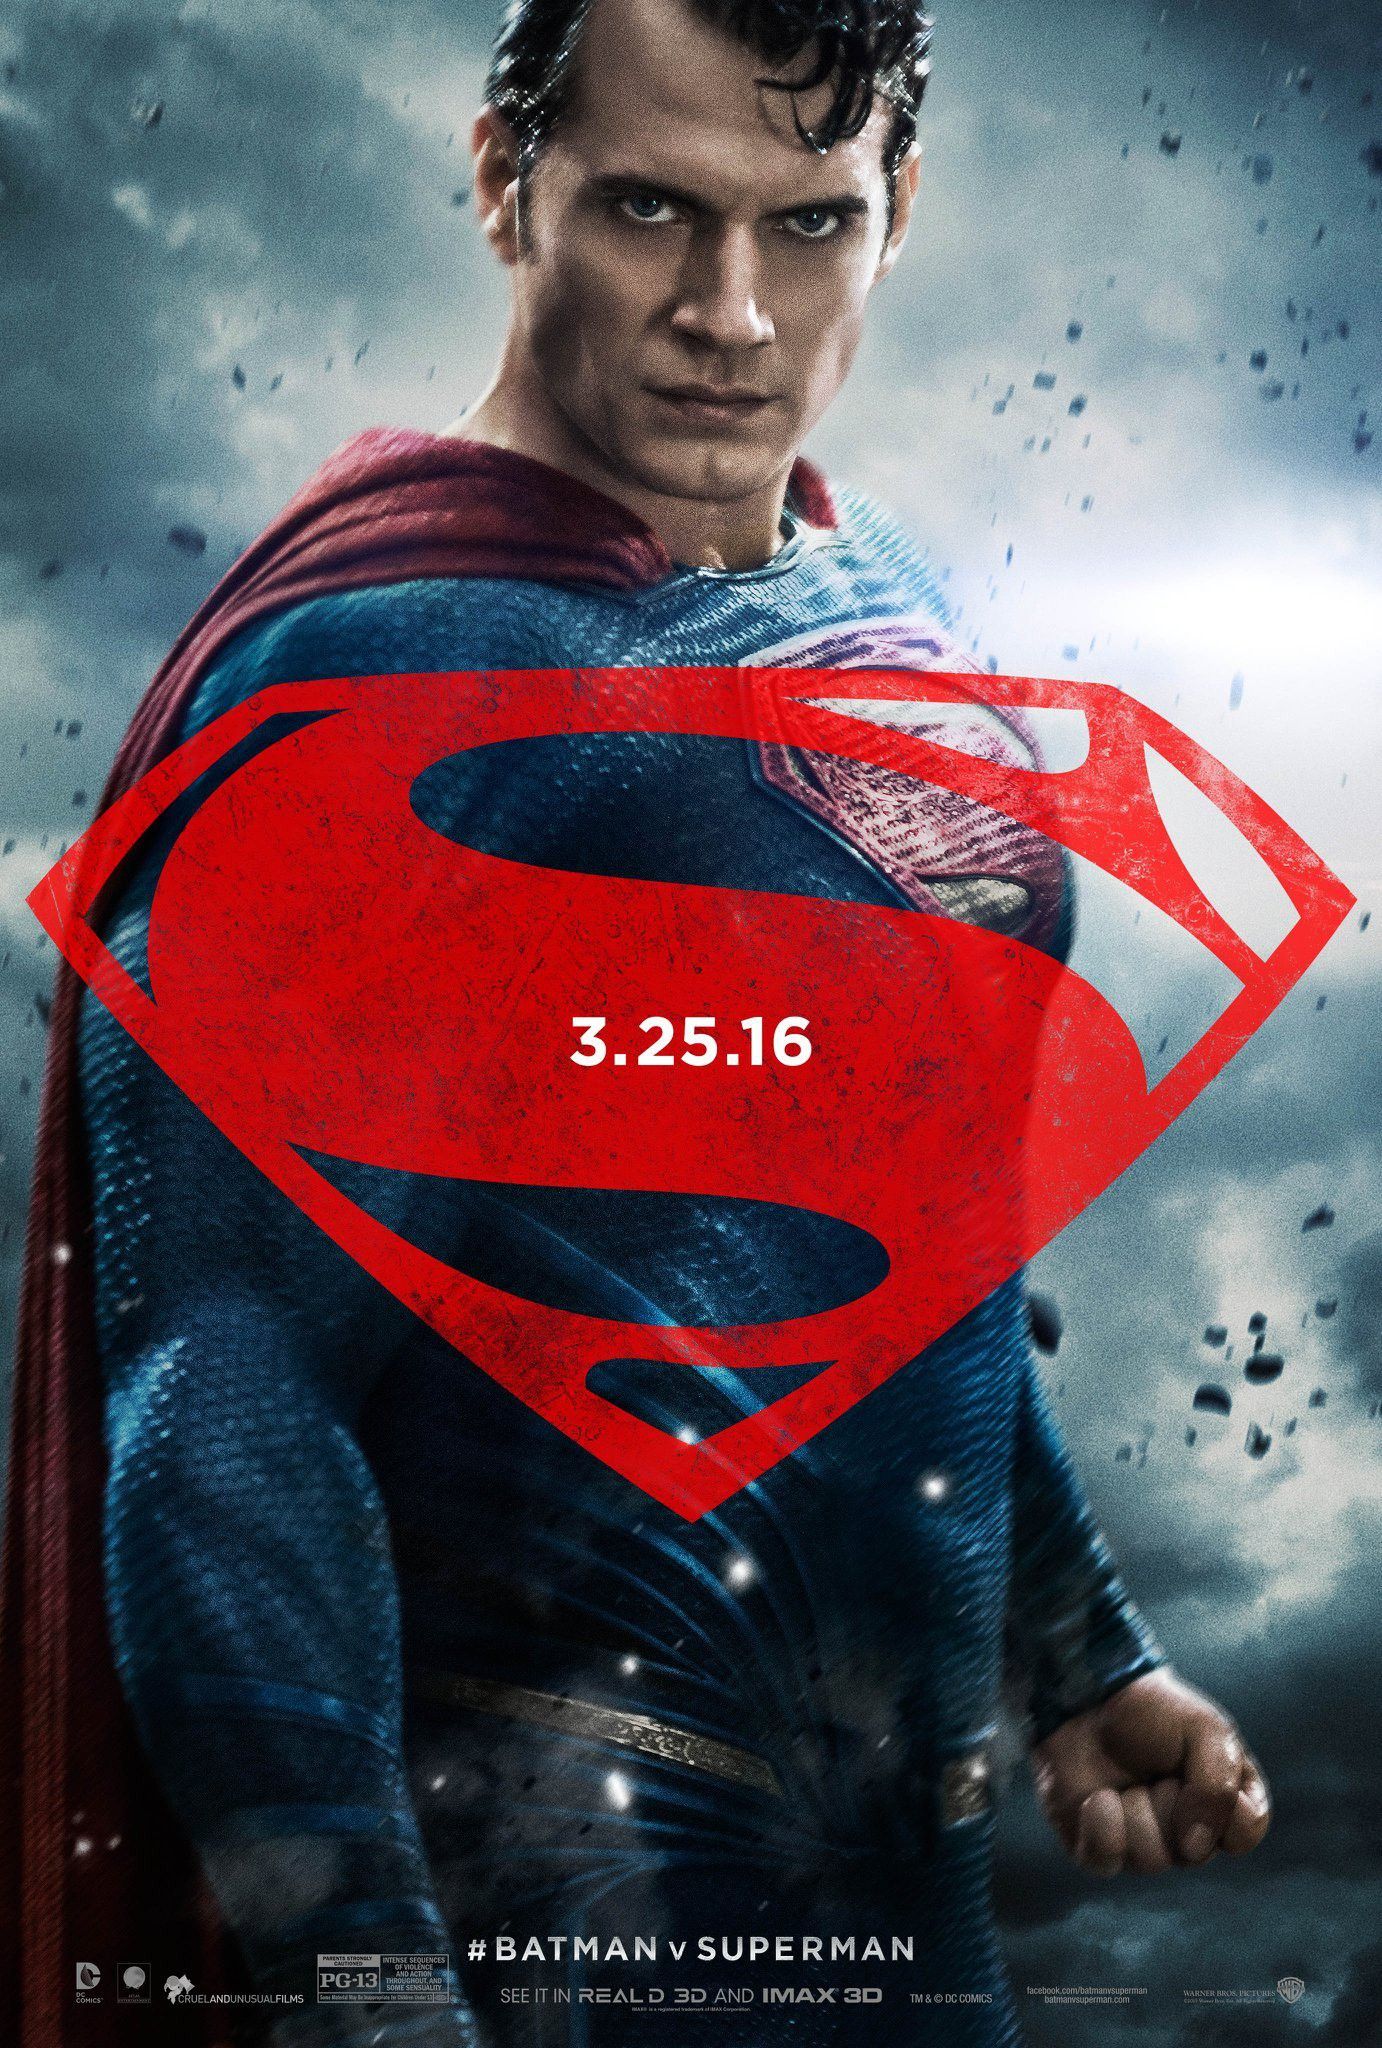 Batman v Superman Superman Character Poster